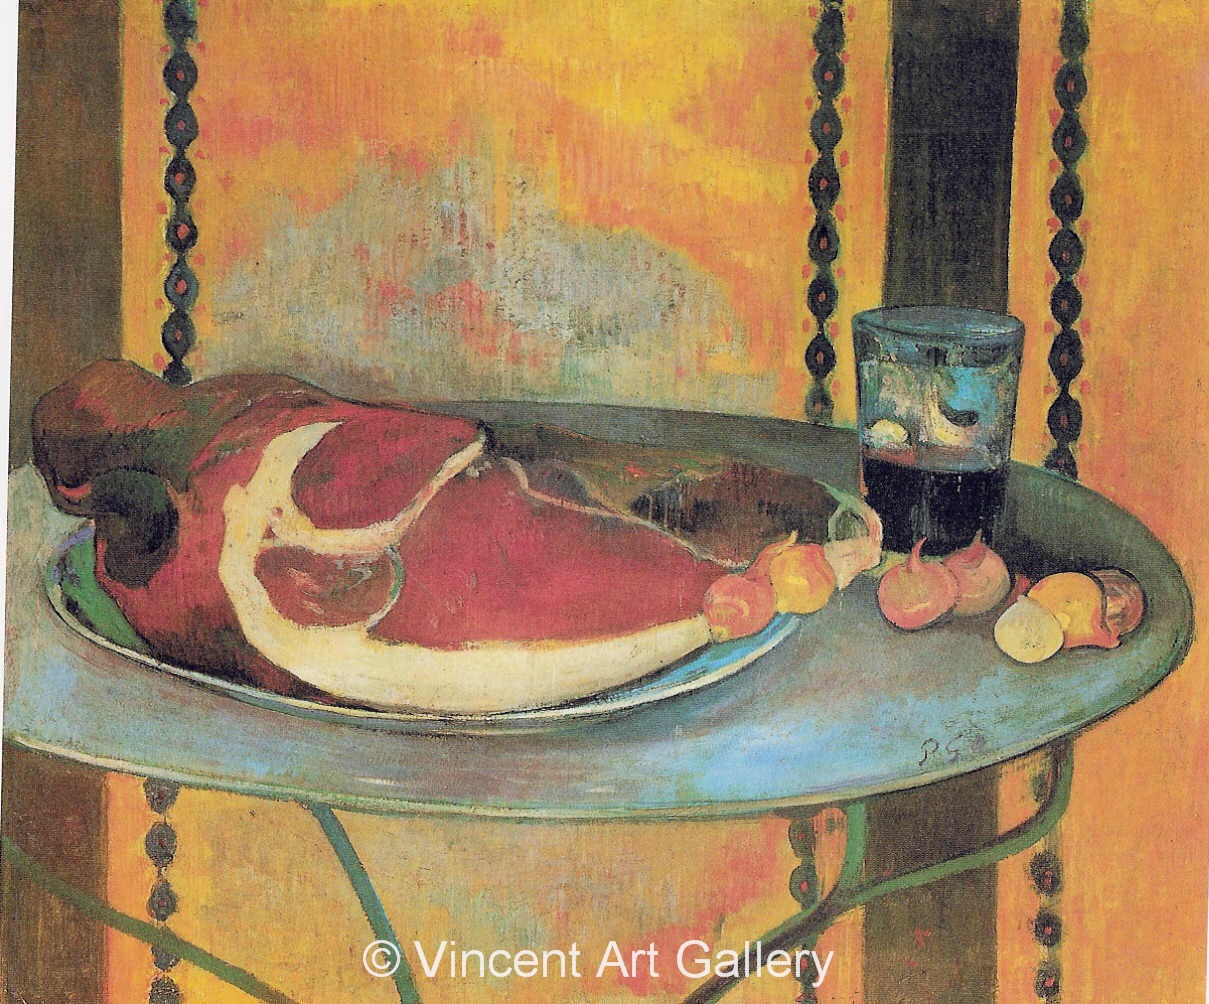 A3615, GAUGUIN, Still Life with Ham, 1889